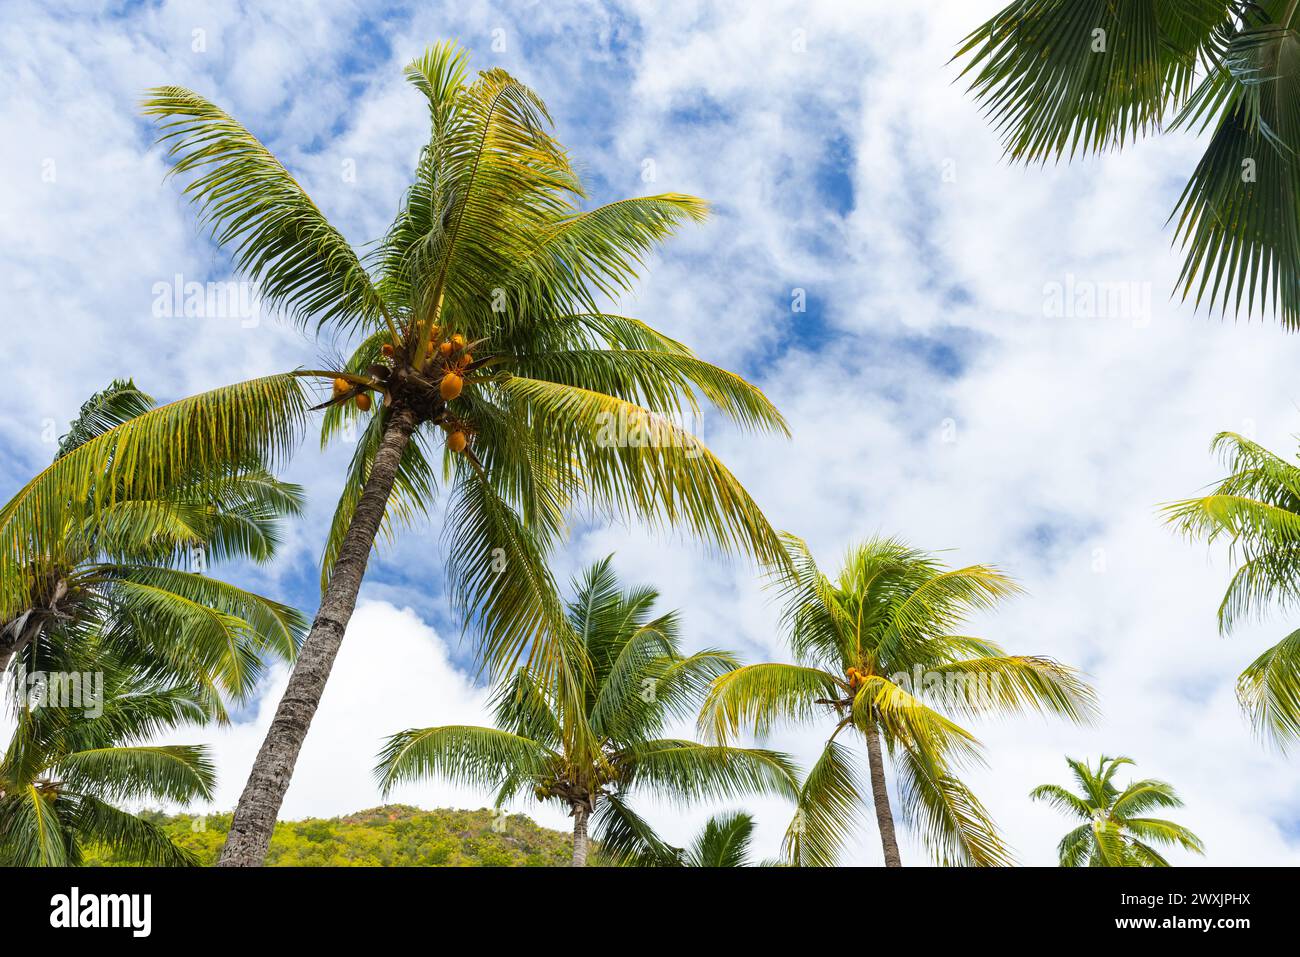 Kokospalmen mit gelben Früchten stehen unter blauem bewölktem Himmel an einem sonnigen Tag, Cocos nucifera Stockfoto